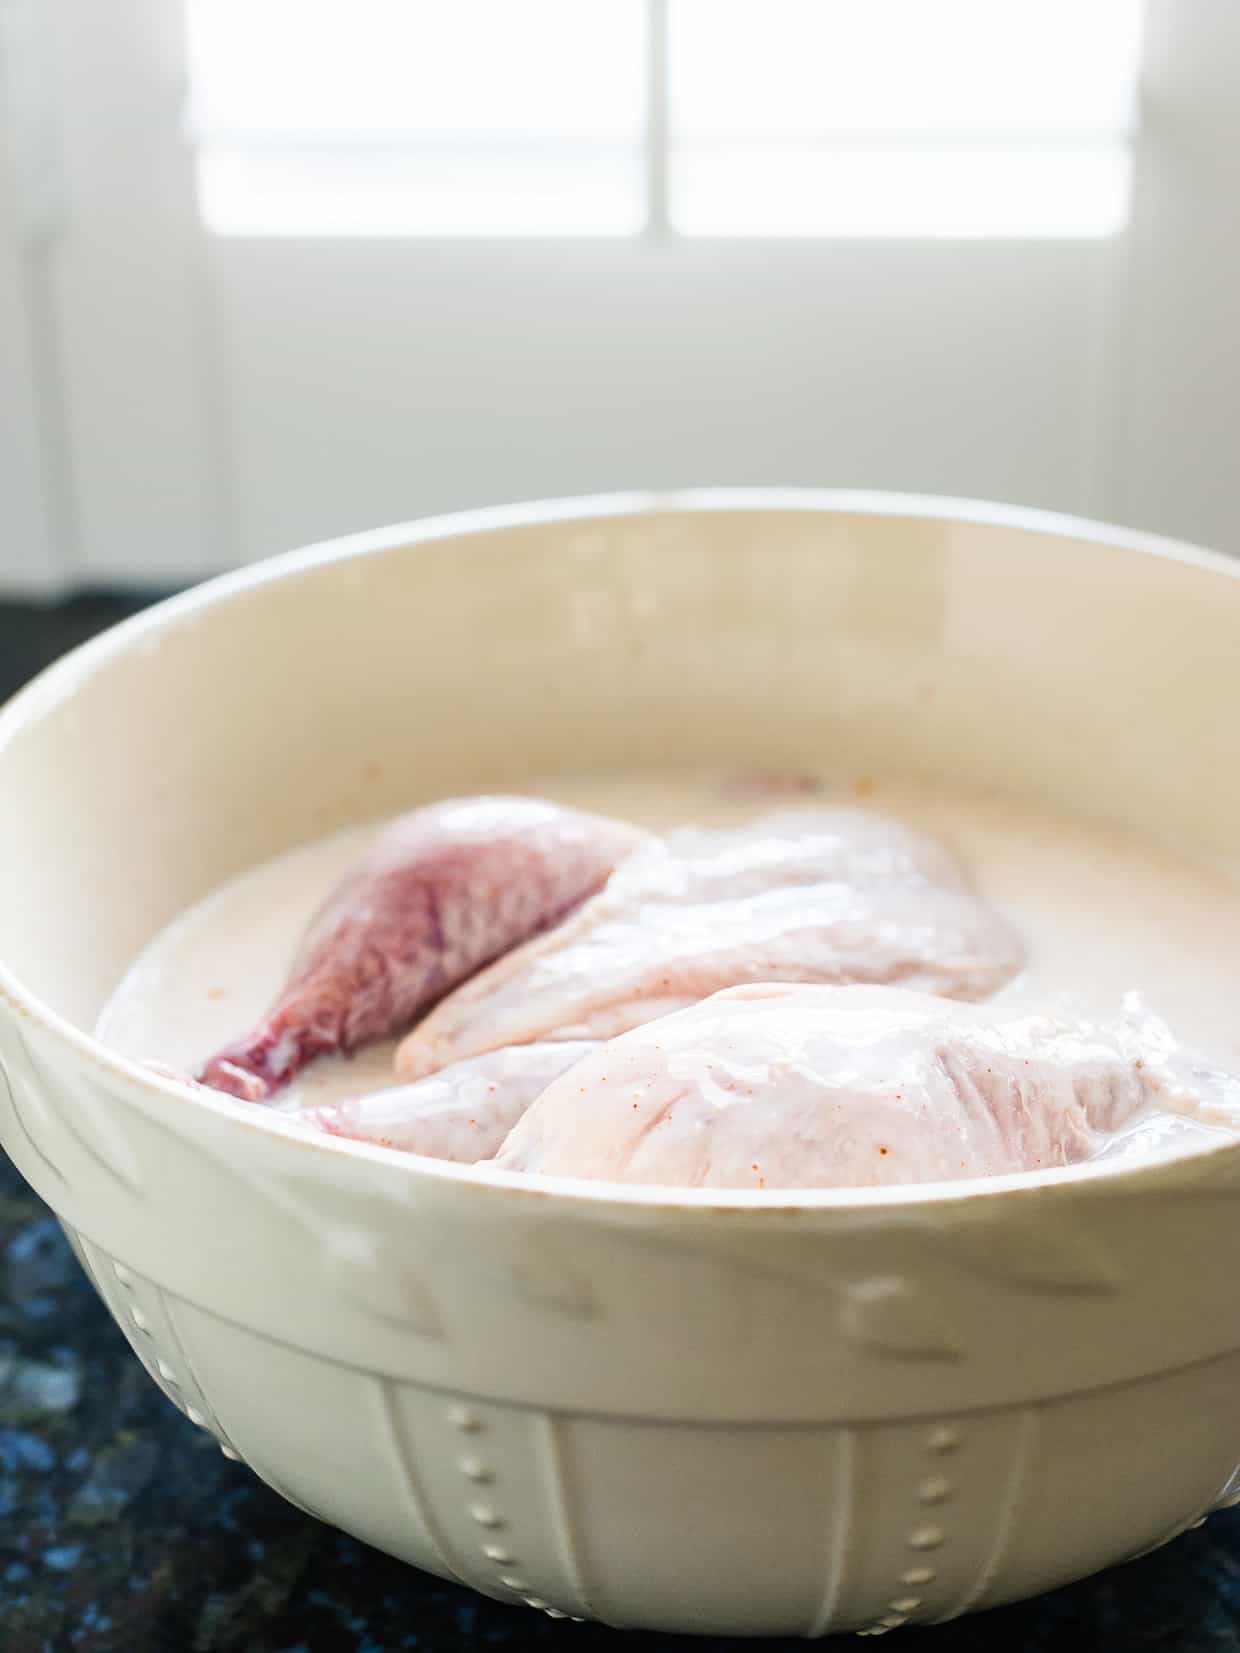 Cornish hens in buttermilk brine in cream colored bowl.